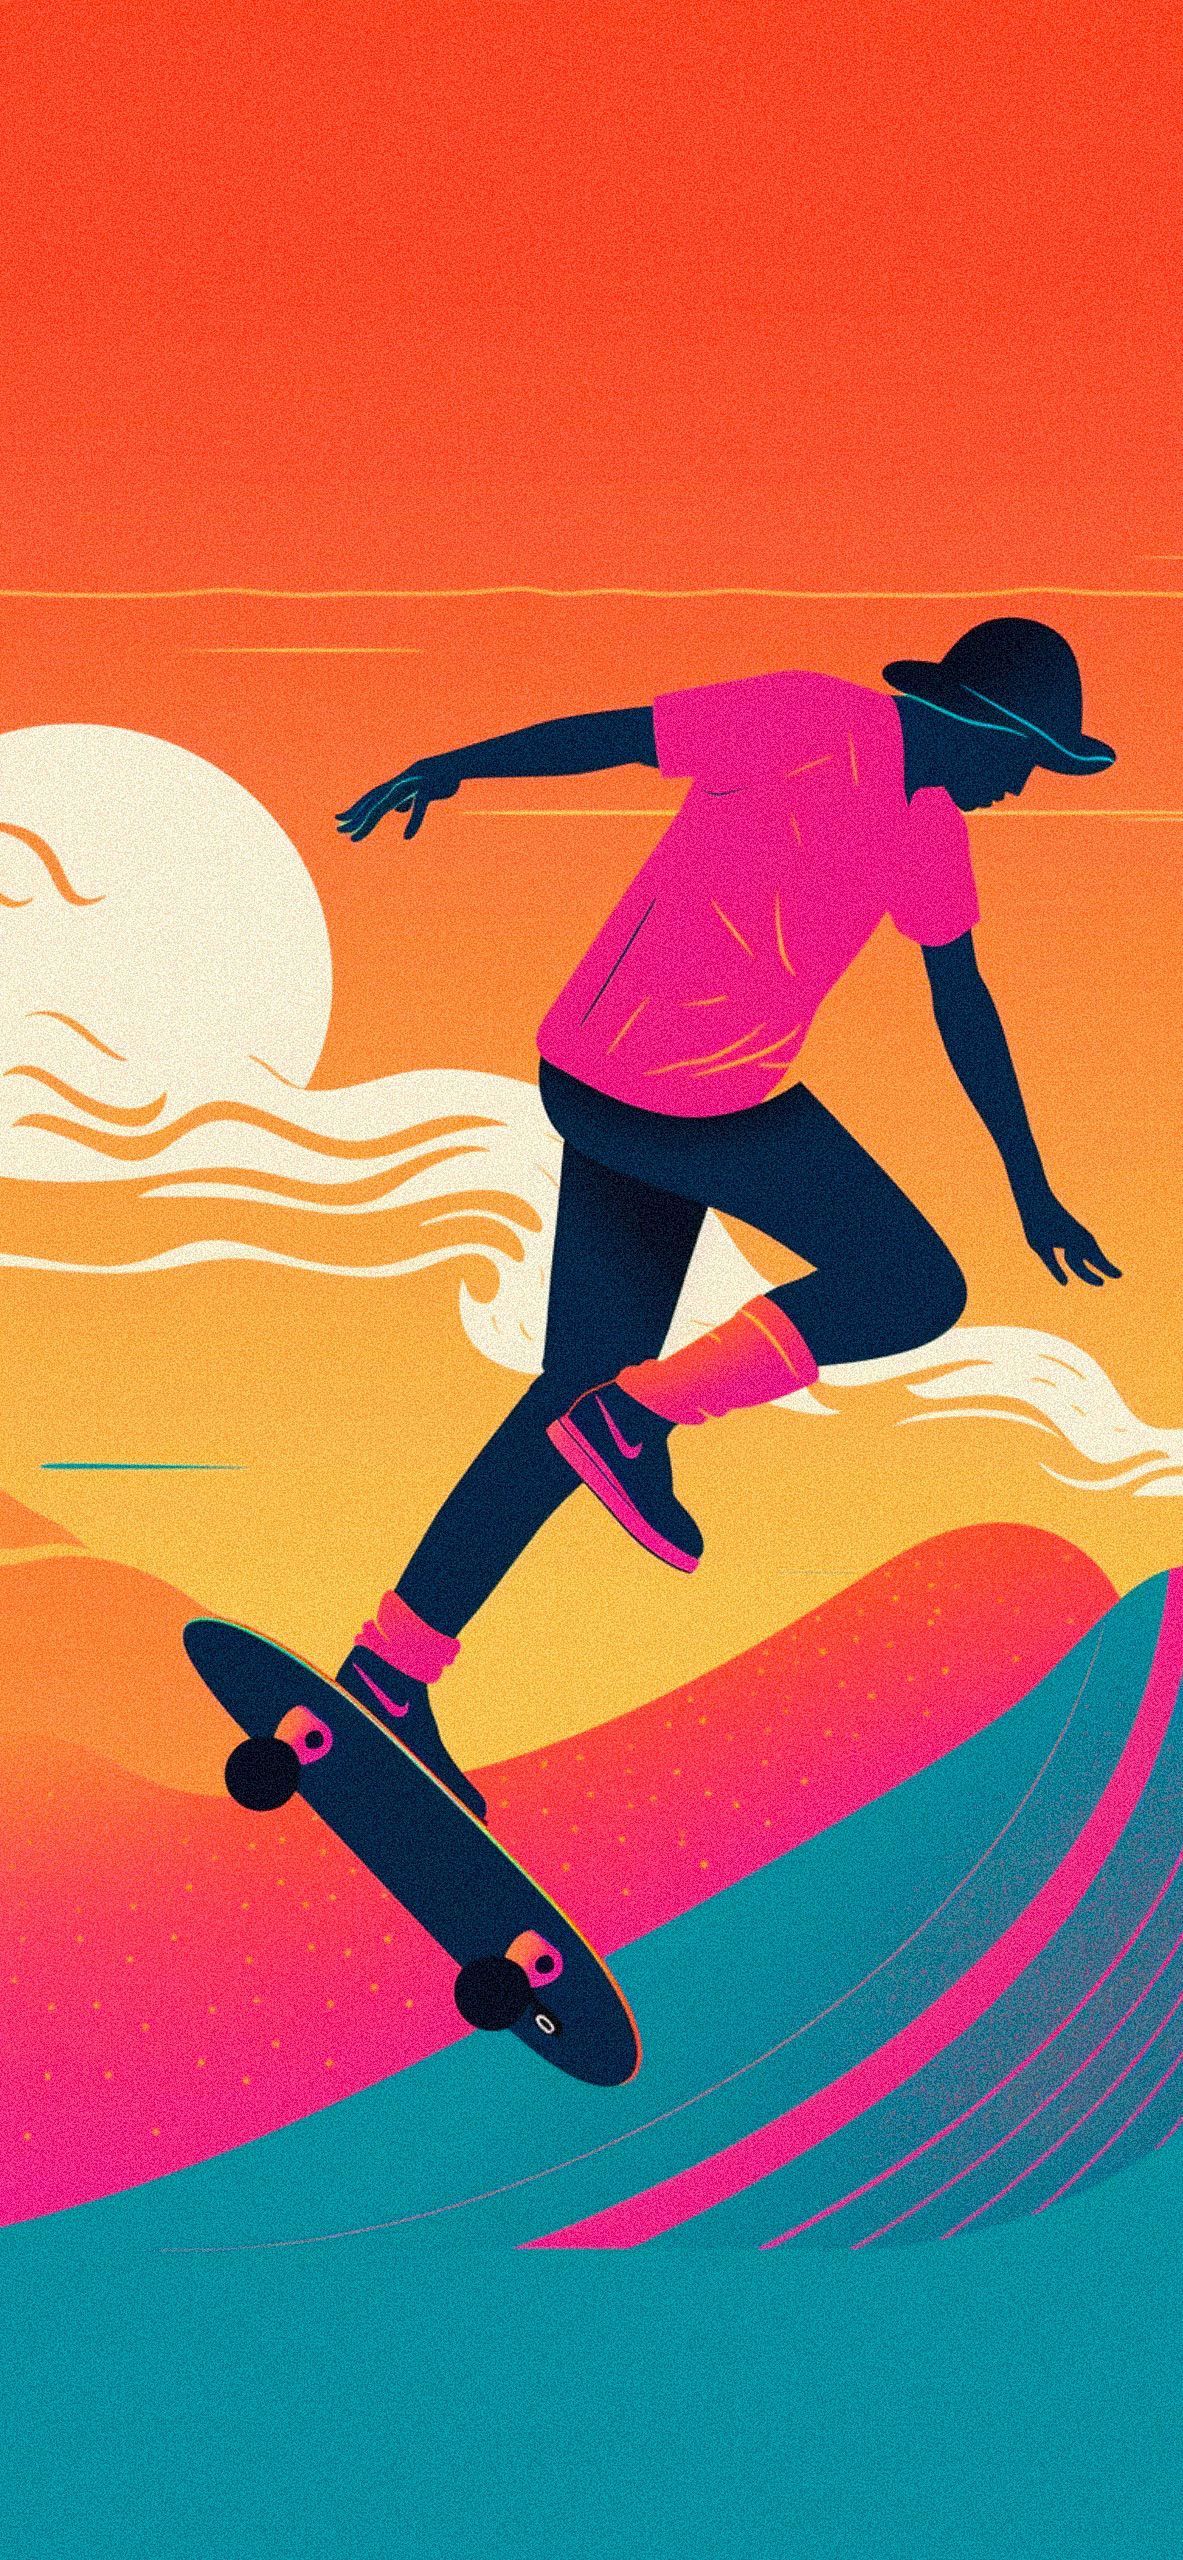 Skateboarder & Sunset Aesthetic Wallpaper